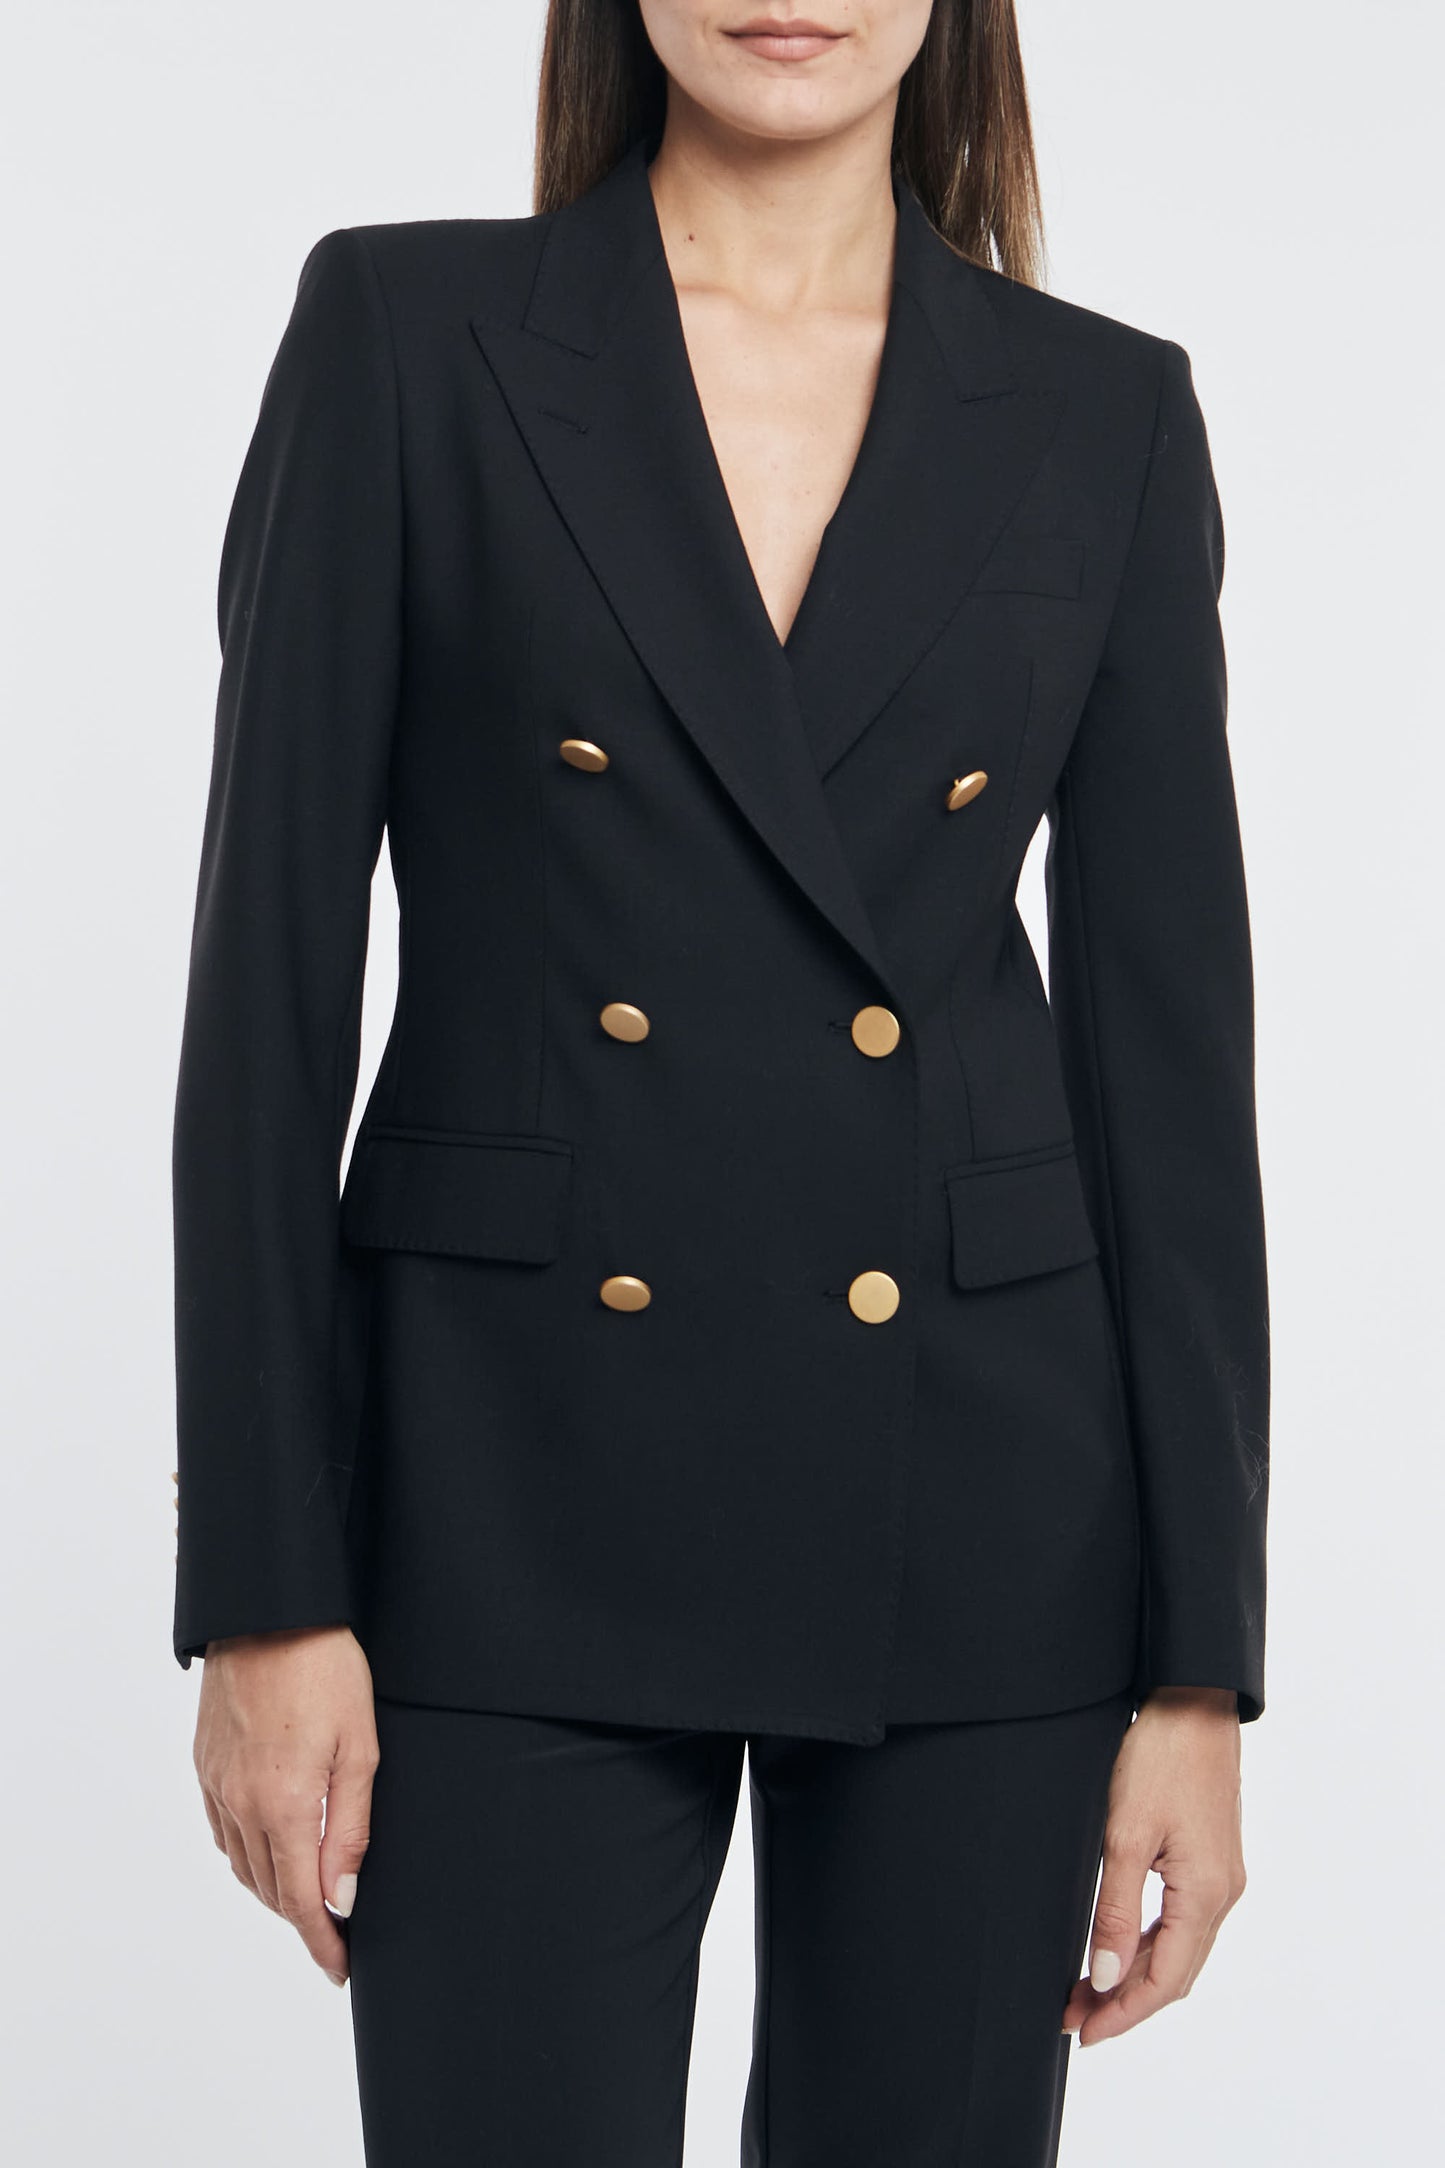  Tagliatore 0205 - Multicolor Double-breasted Jacket For Women Multicolor Donna - 1